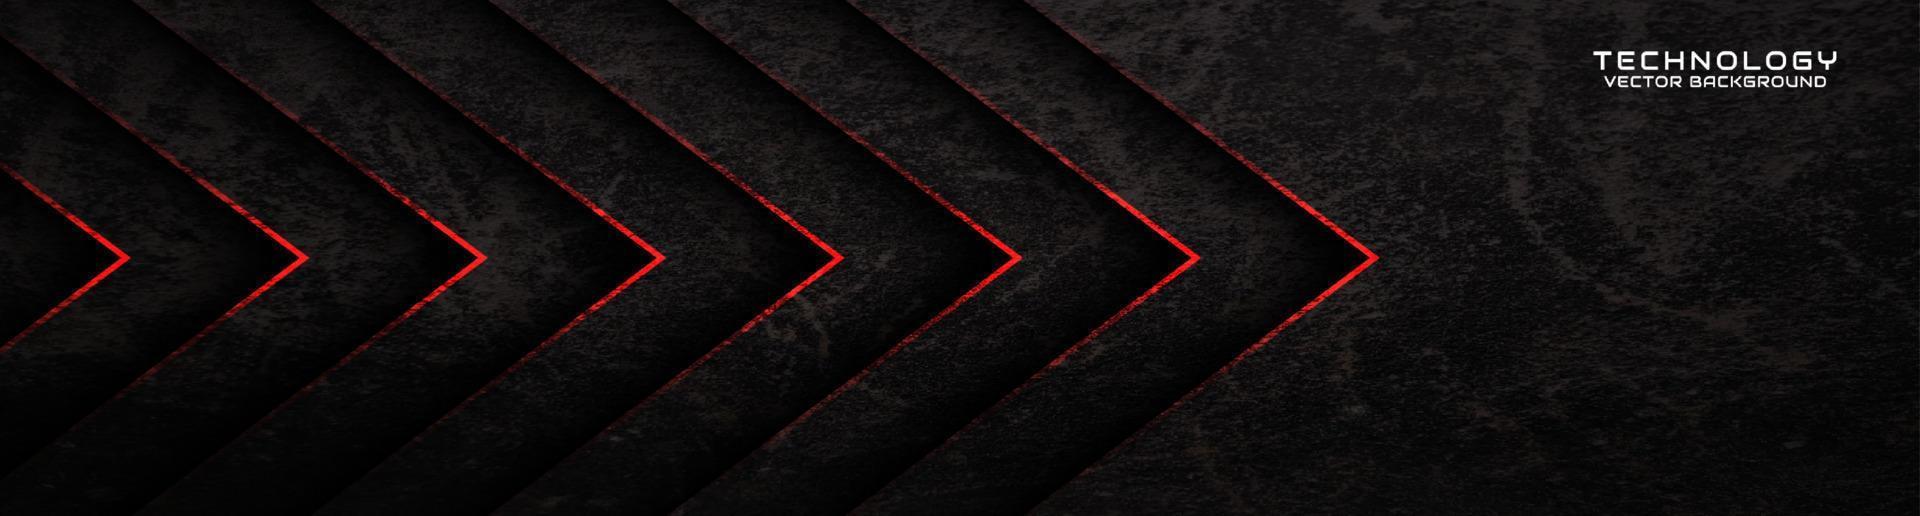 3d schwarzer rauer grunge techno abstrakter hintergrundüberlappungsschicht auf dunklem raum mit roter pfeildekoration. modernes grafikdesign-element-schnittkonzept für banner, flyer, karte oder broschüreneinband vektor